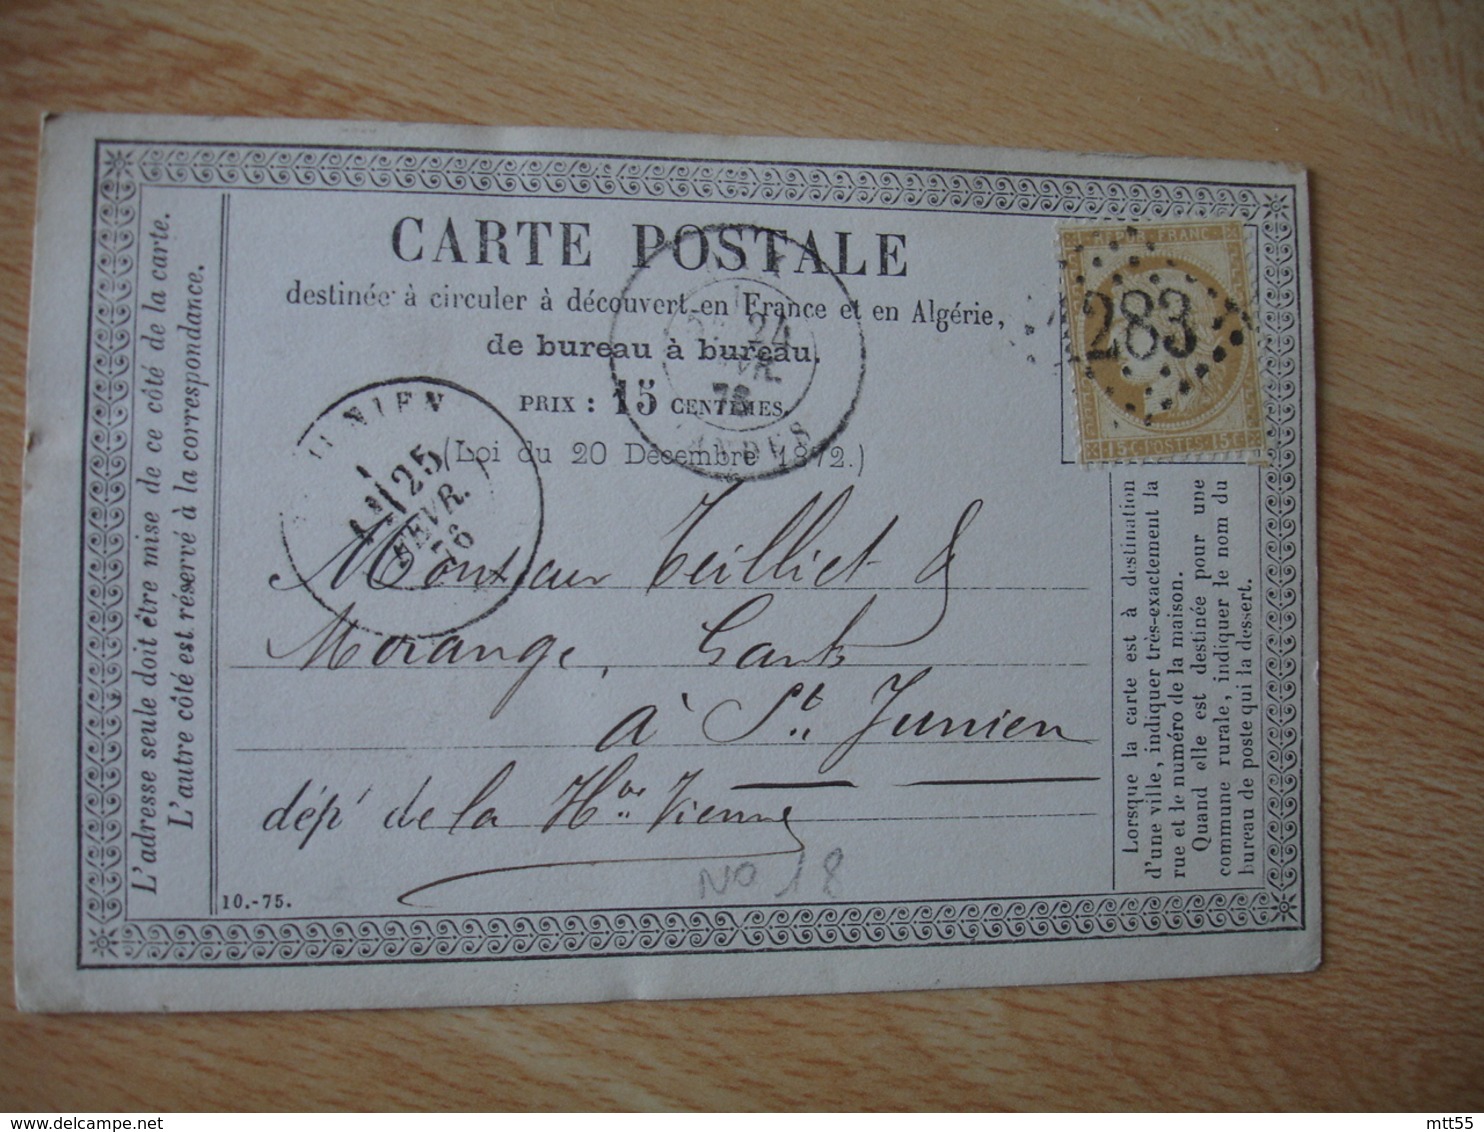 Carte Postale Precurseur Bureau A Bureau Dax Cachet Type 18 Chiffre 1283 Pour Paris Timbre Ceres 15 C - 1849-1876: Classic Period